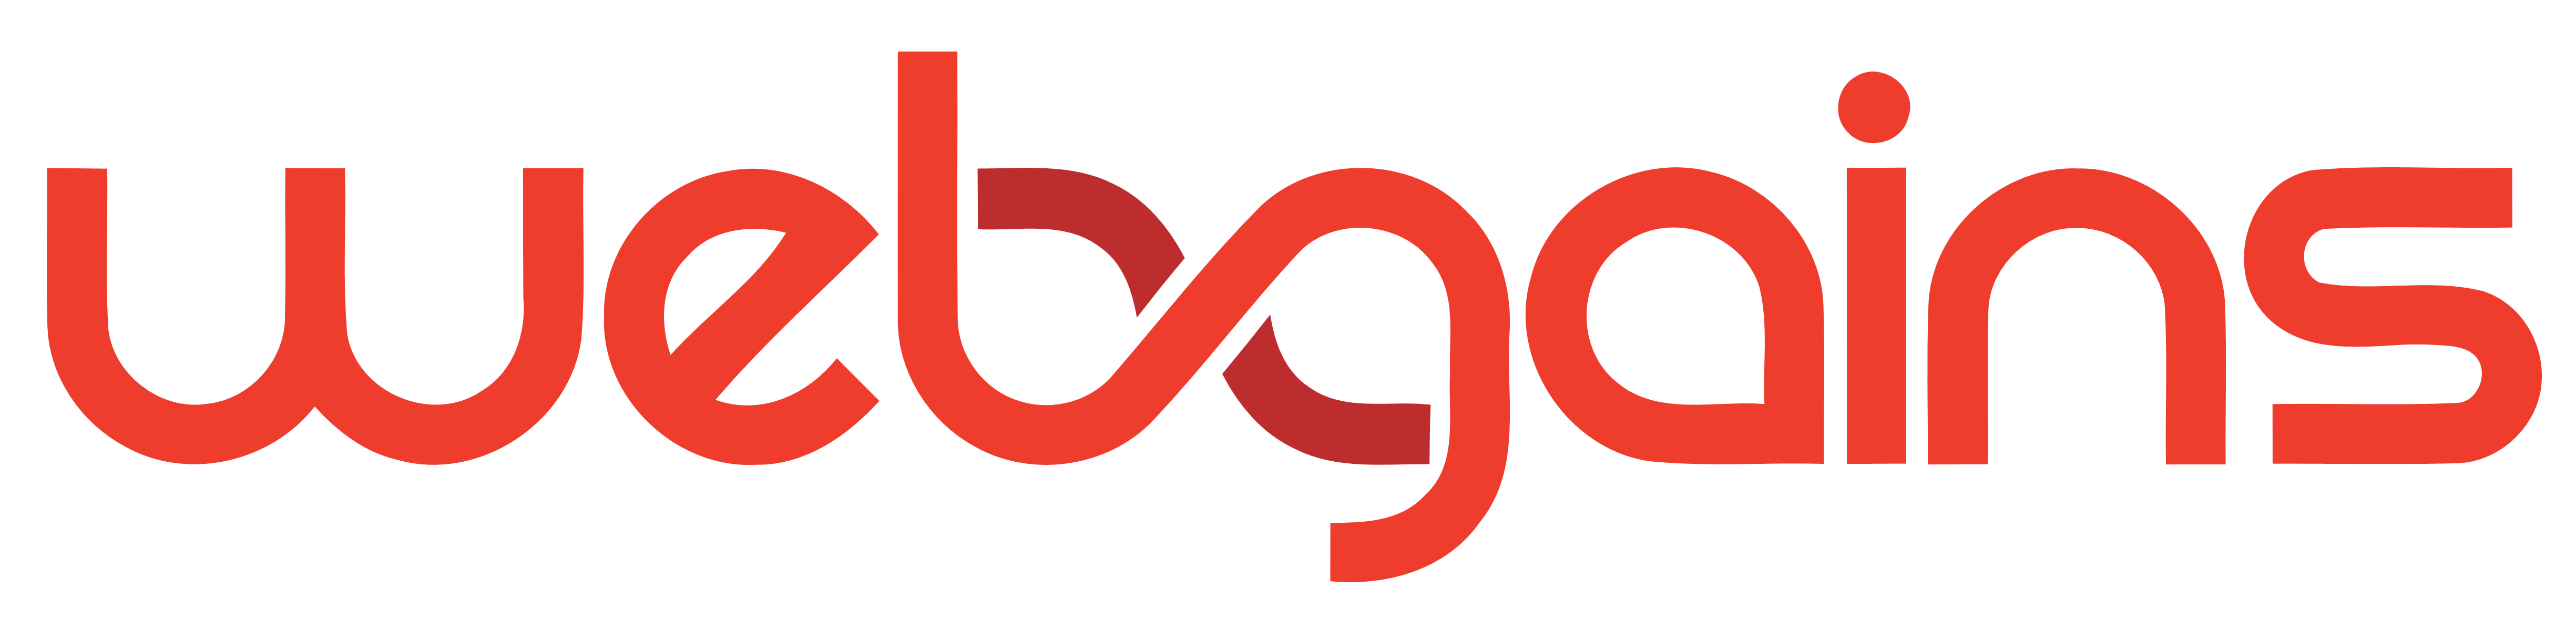 Webgains logo, logotype